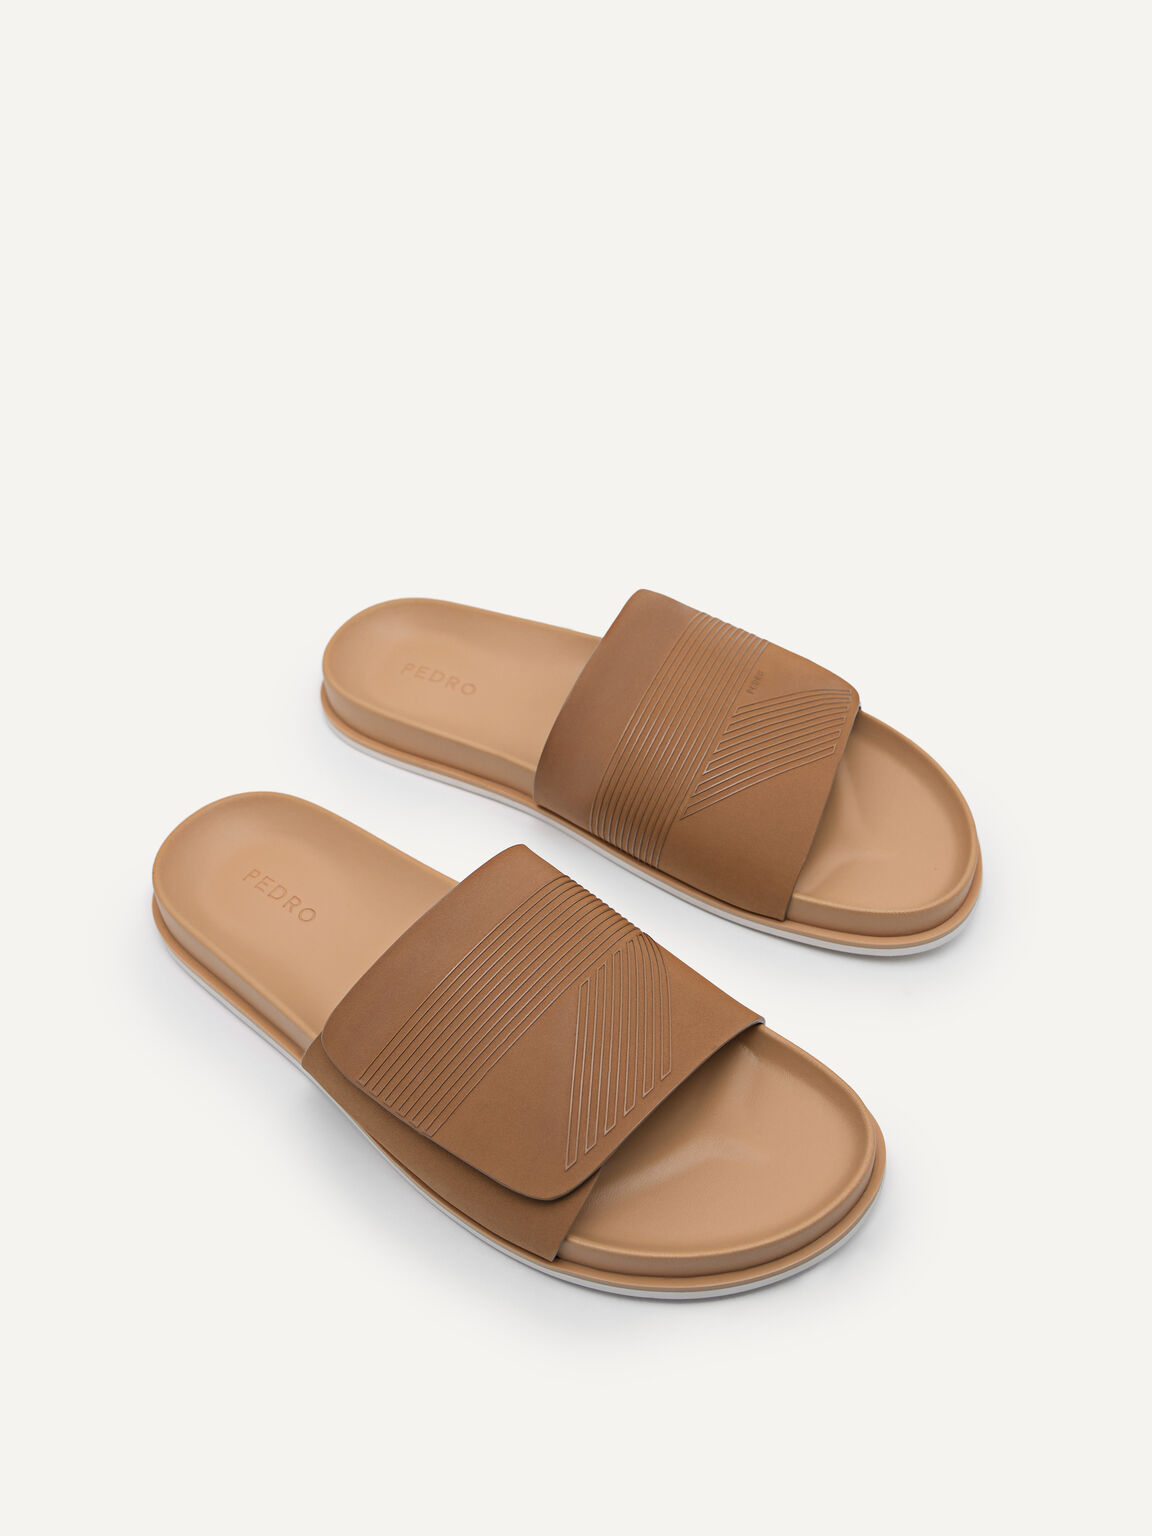 Slide Sandals, Camel